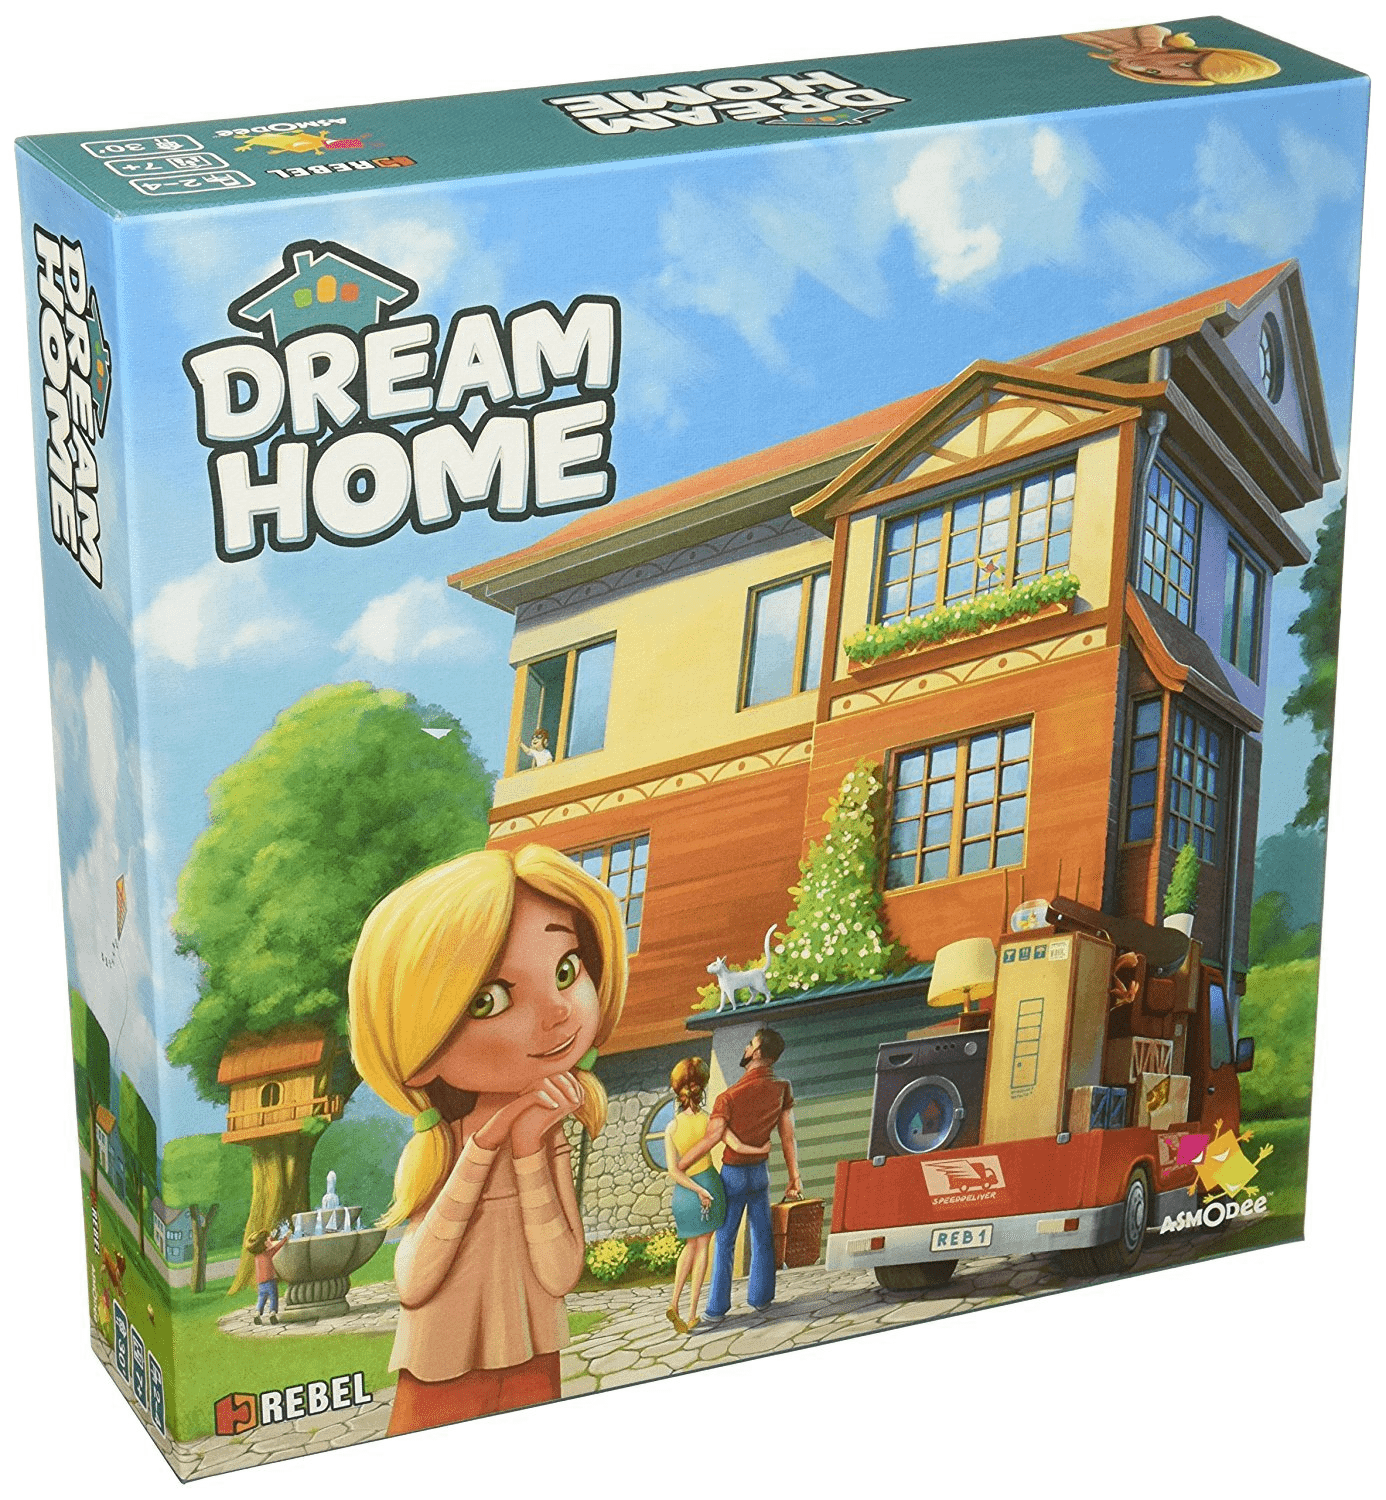 Dream Home